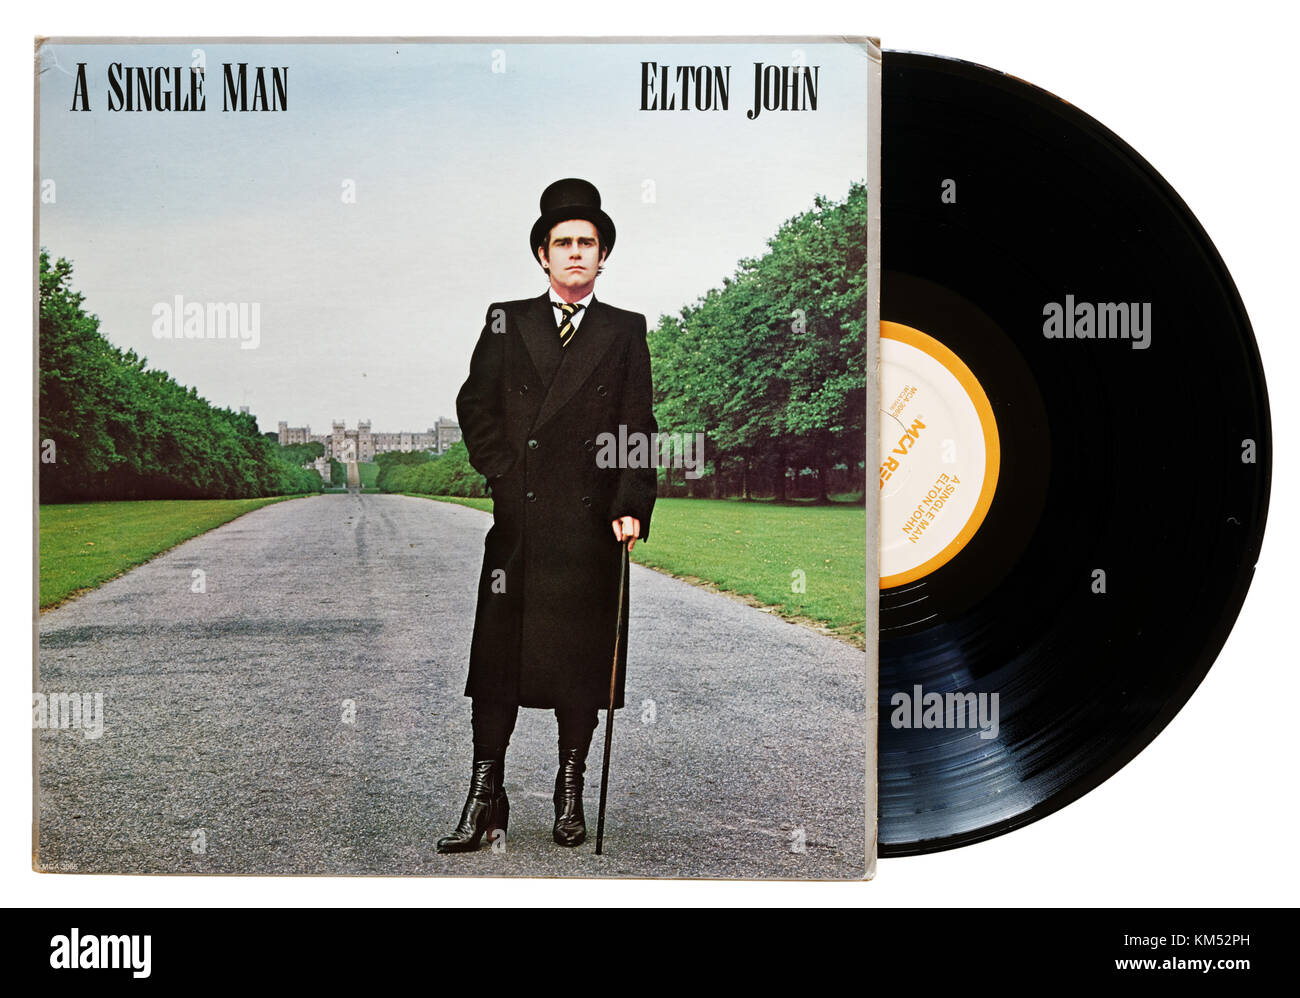 Elton John un uomo singolo album Foto Stock